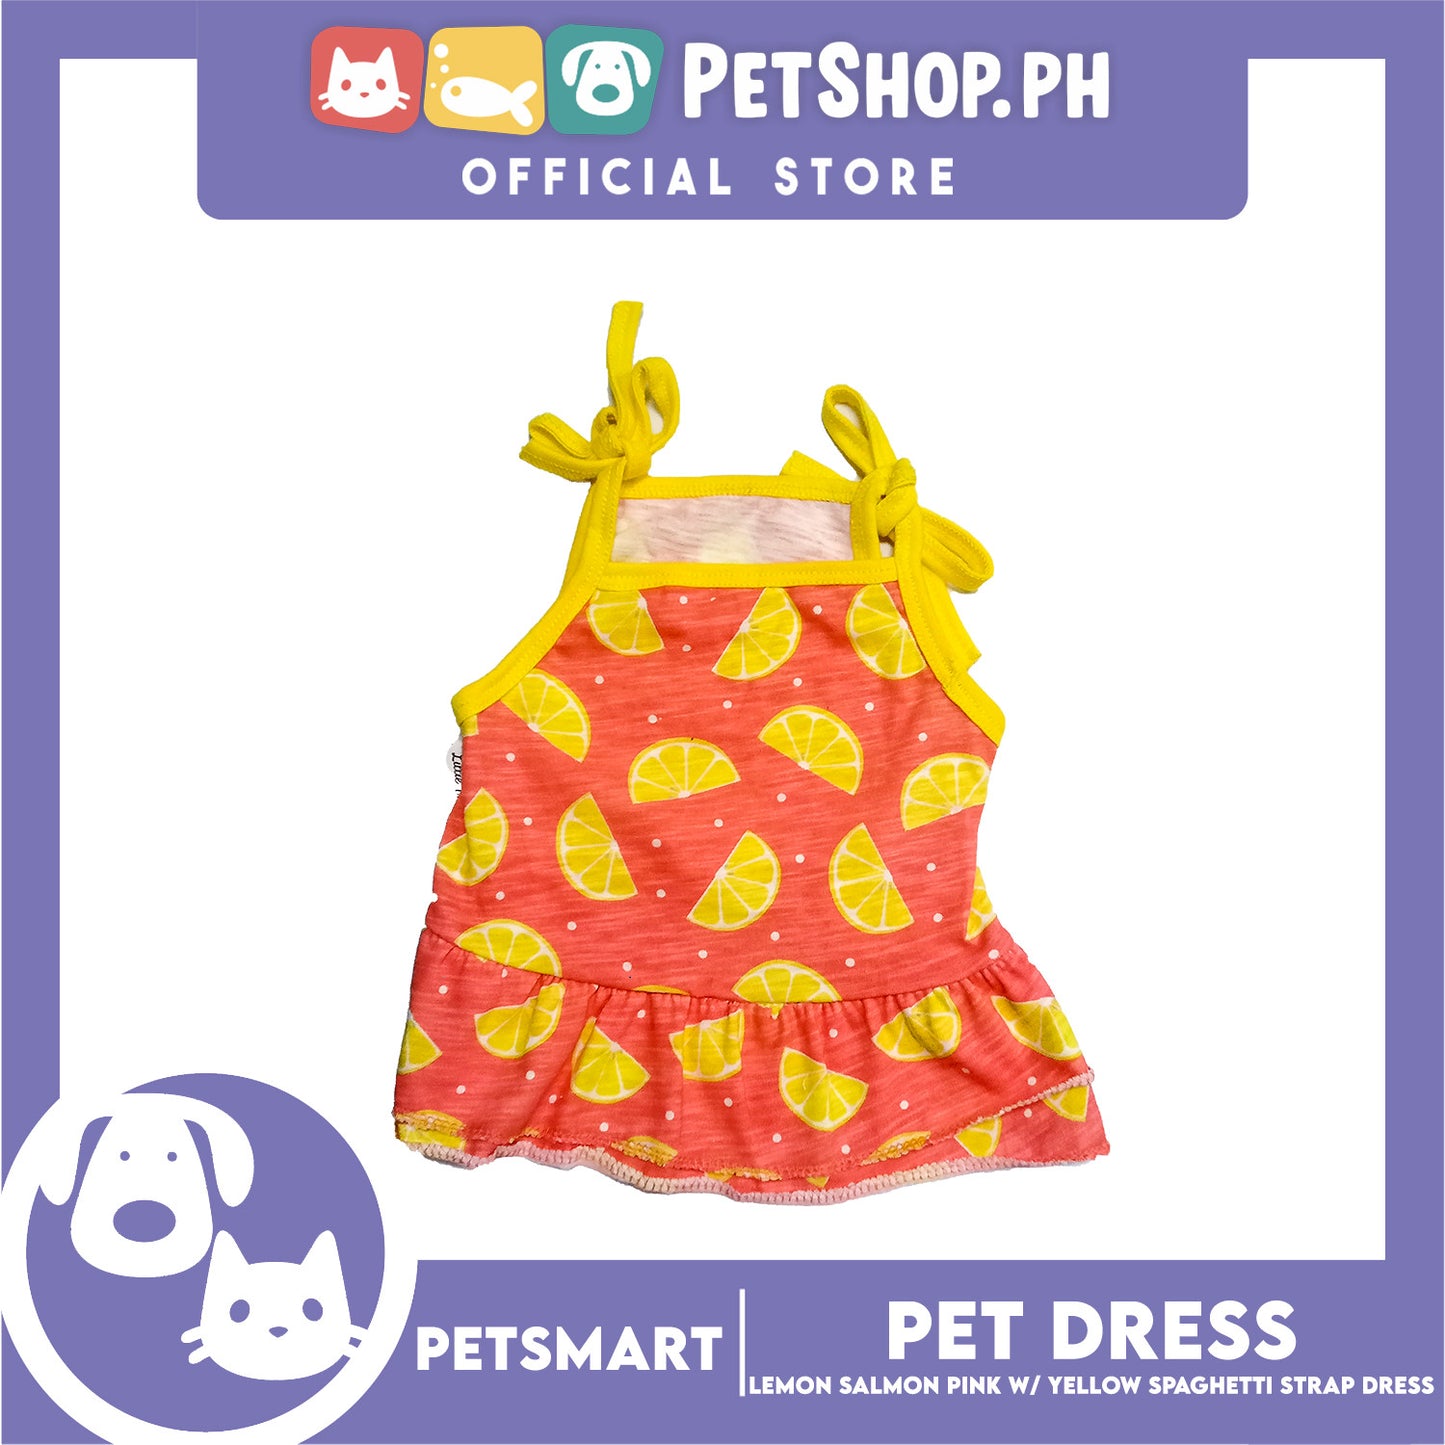 Pet Dress Lemon Salmon Pink with Yellow Spaghetti Strap Design, Large Size (DG-CTN202L)